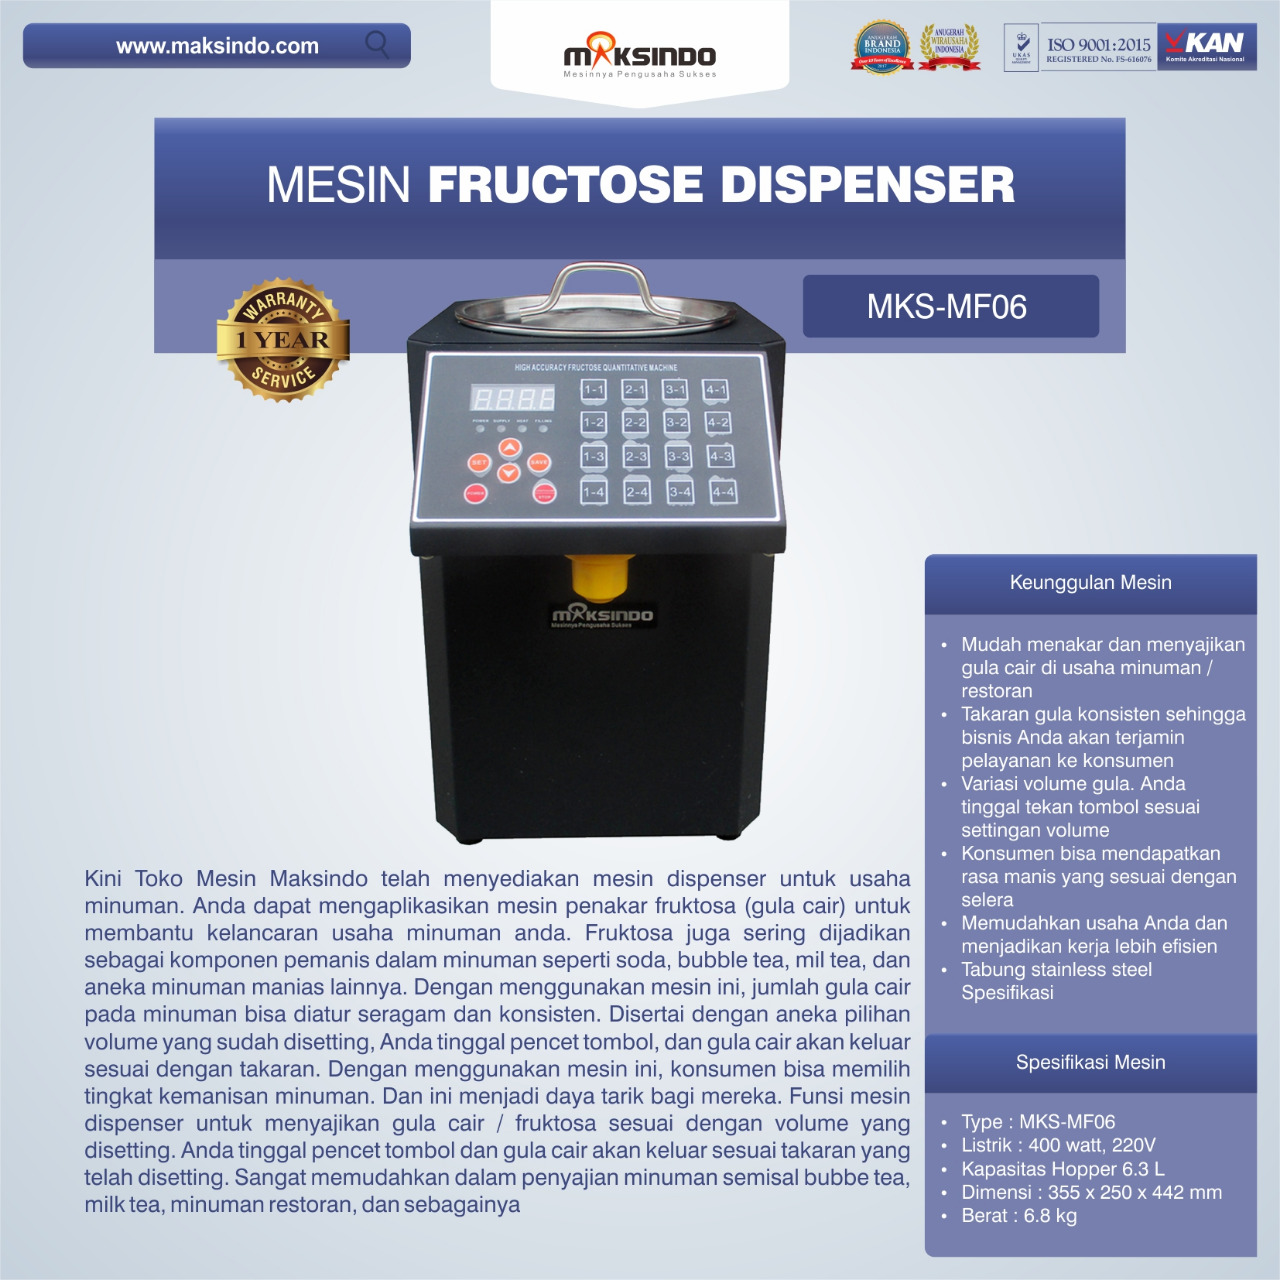 Jual Mesin Fructose Dispenser MKS-MF06 di Bandung